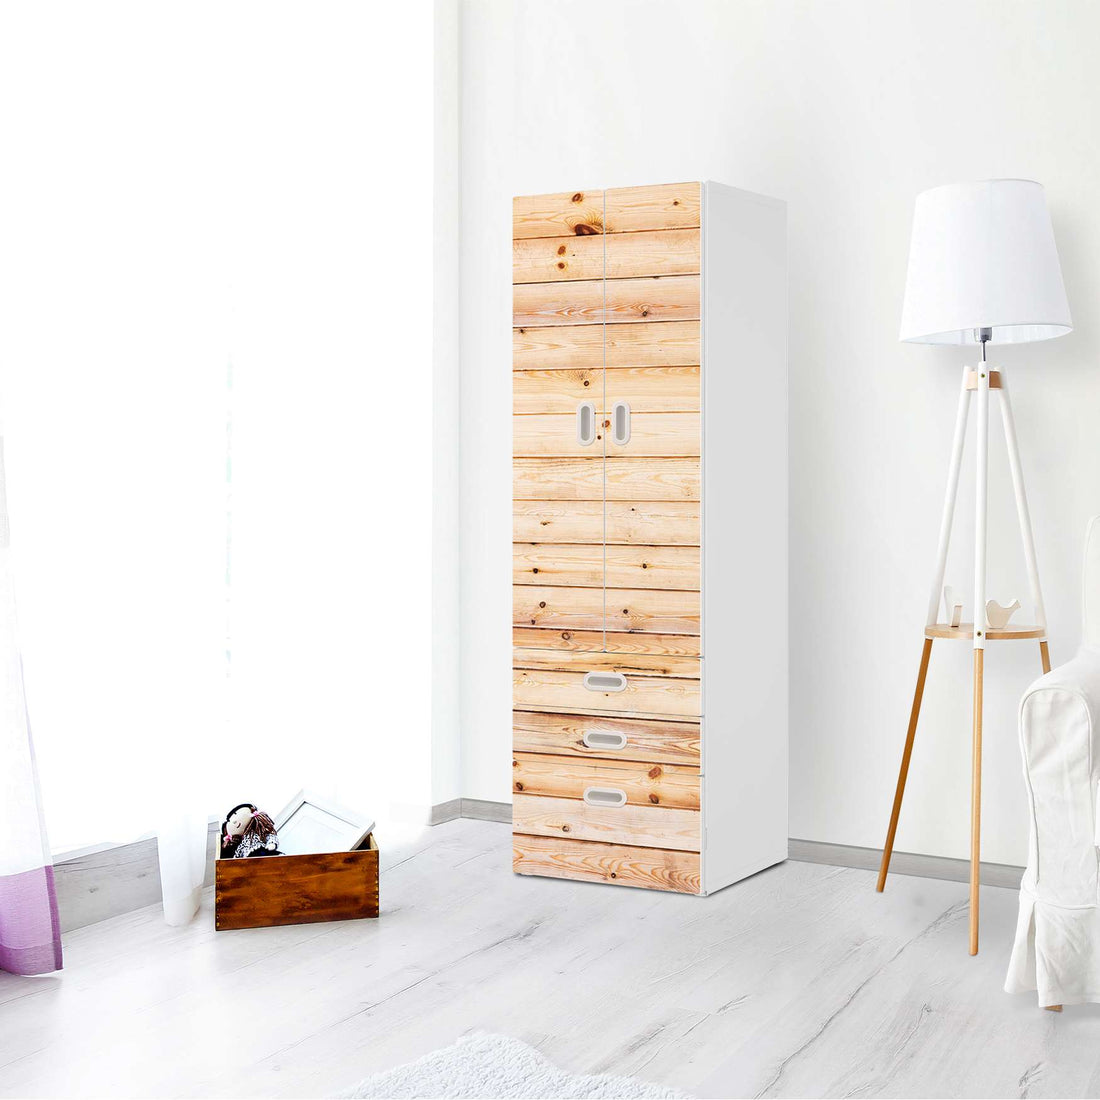 Klebefolie Bright Planks - IKEA Stuva / Fritids kombiniert - 3 Schubladen und 2 große Türen - Kinderzimmer